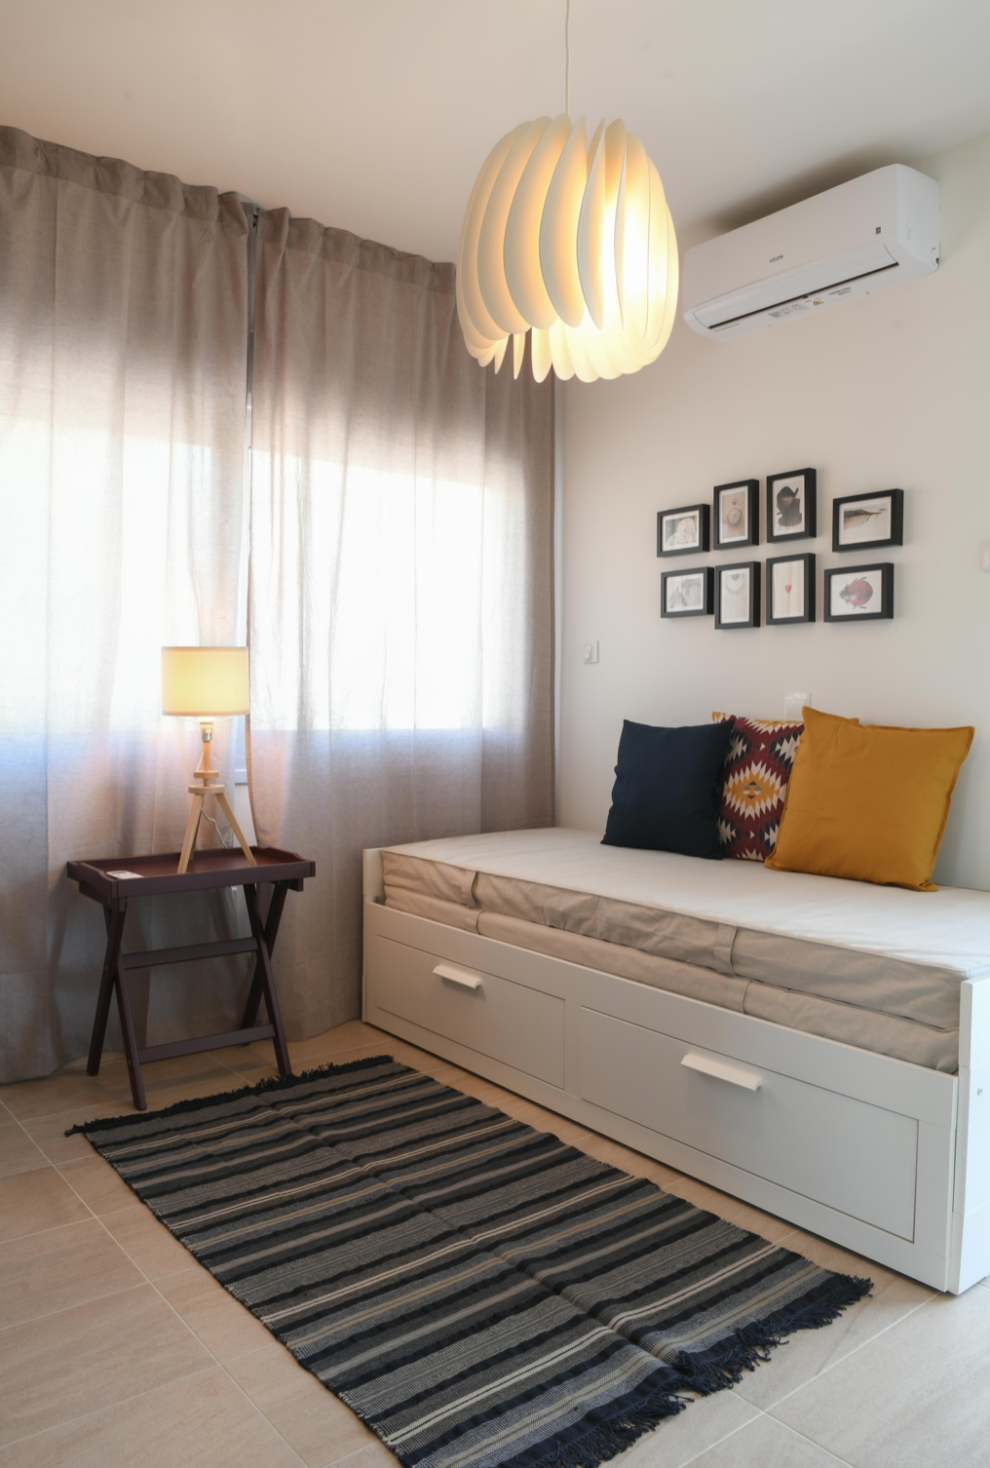 New For Sale €205,000 Apartment 3 bedrooms, Nicosia (center), Lefkosia Nicosia - 7